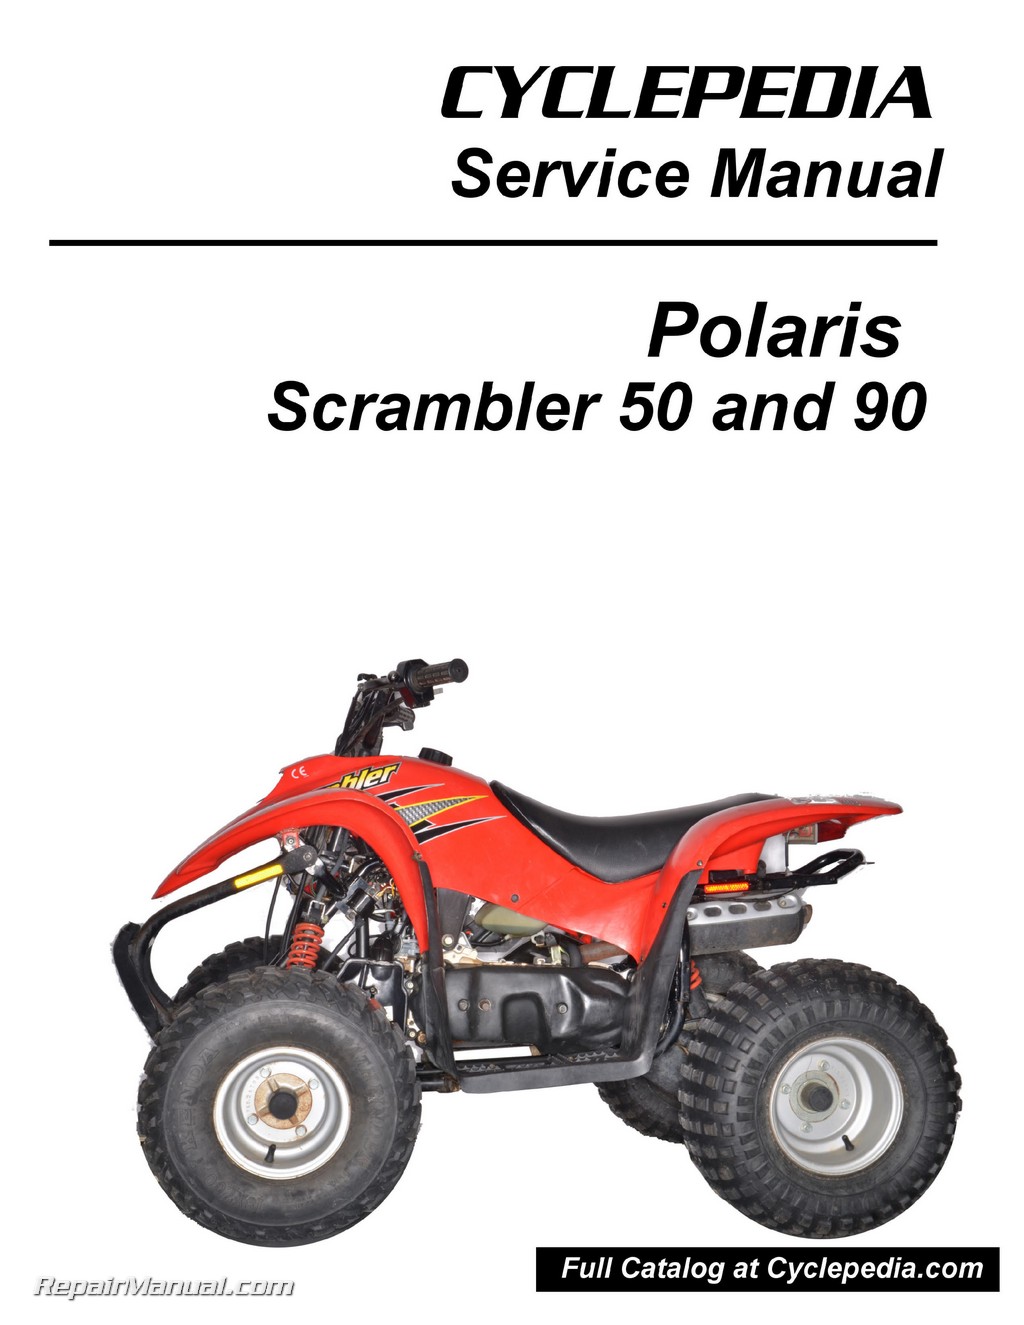 Polaris Scrambler 50cc Atv Wiring Diagram, Polaris, Get Free Image ...